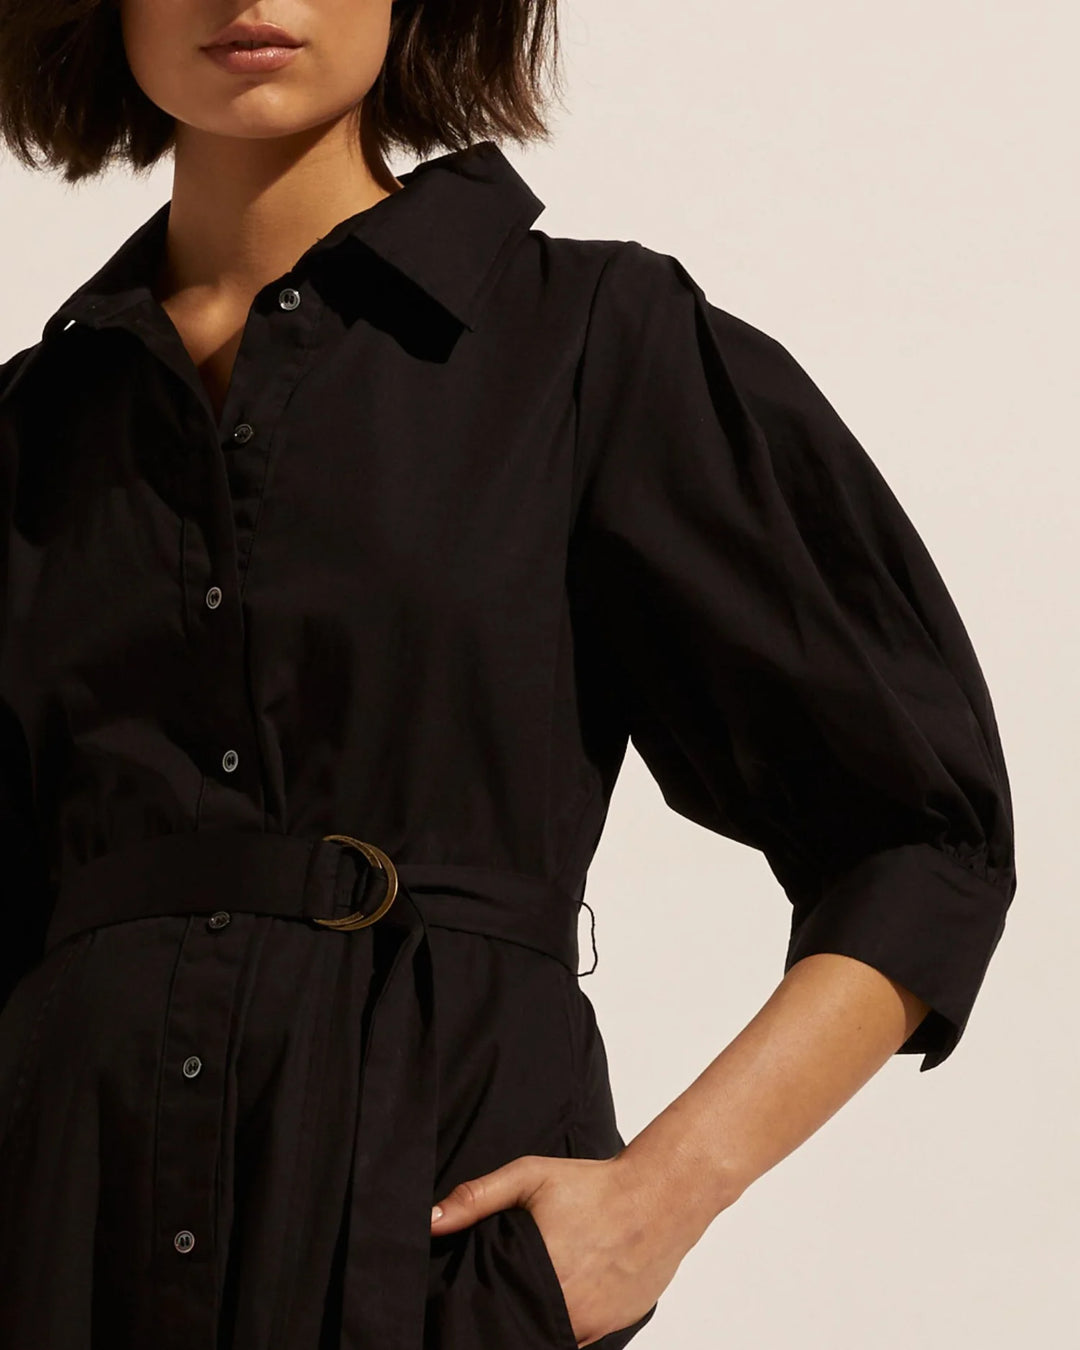 Favour Dress - Black Dresses Zoe Kratzmann   